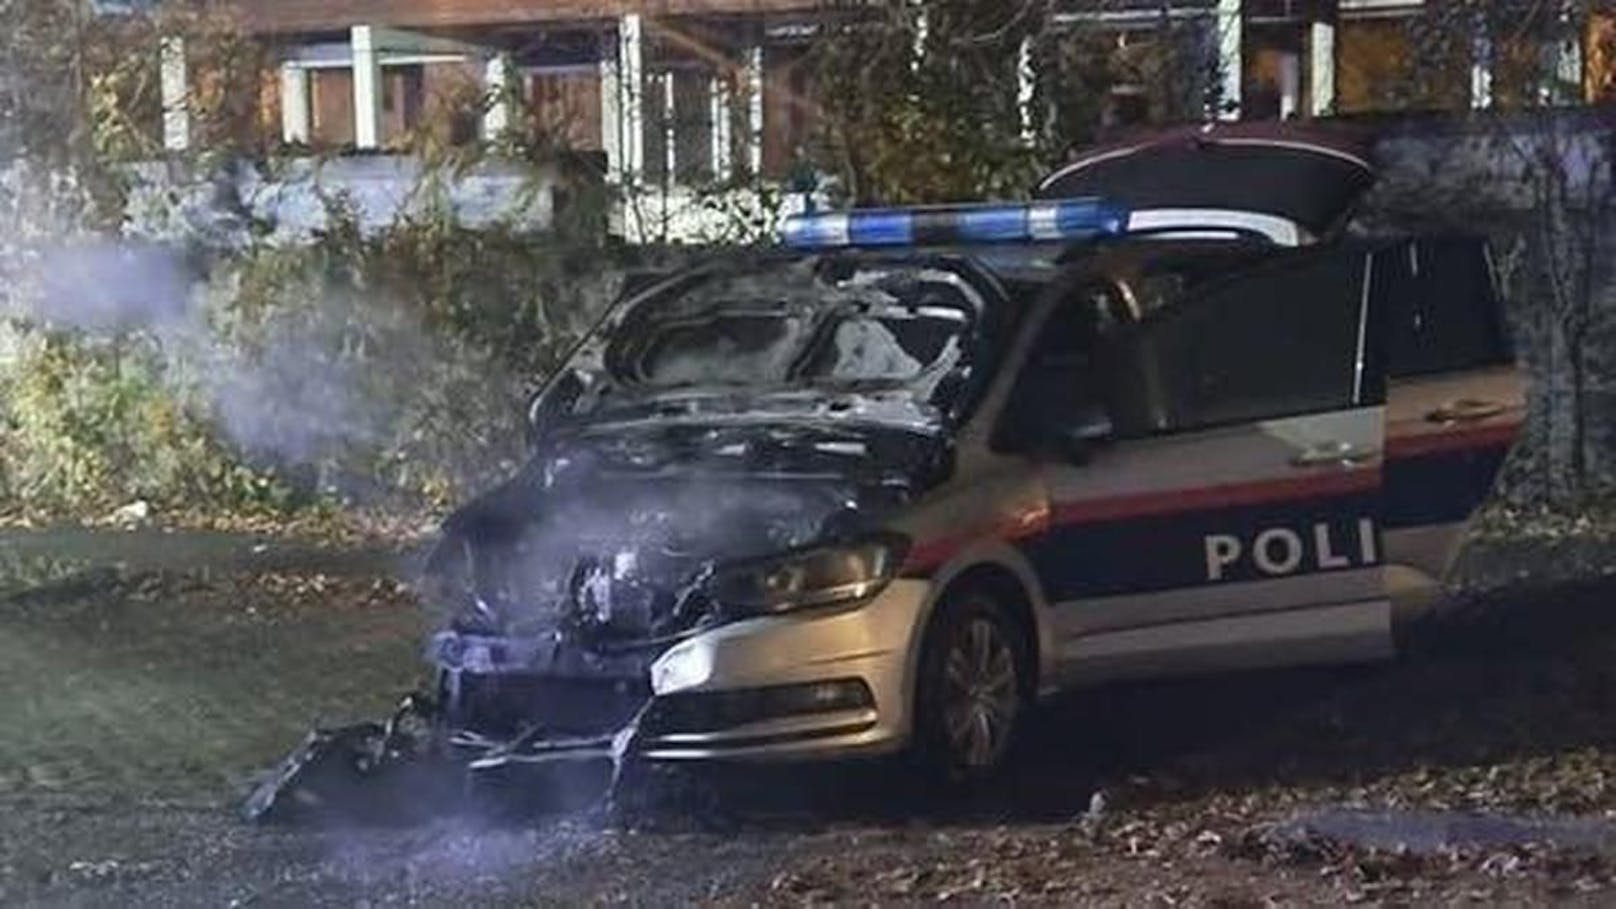 Drei Jugendliche haben in Linz ein Polizeiauto mit Benzin übergossen und angezündet.